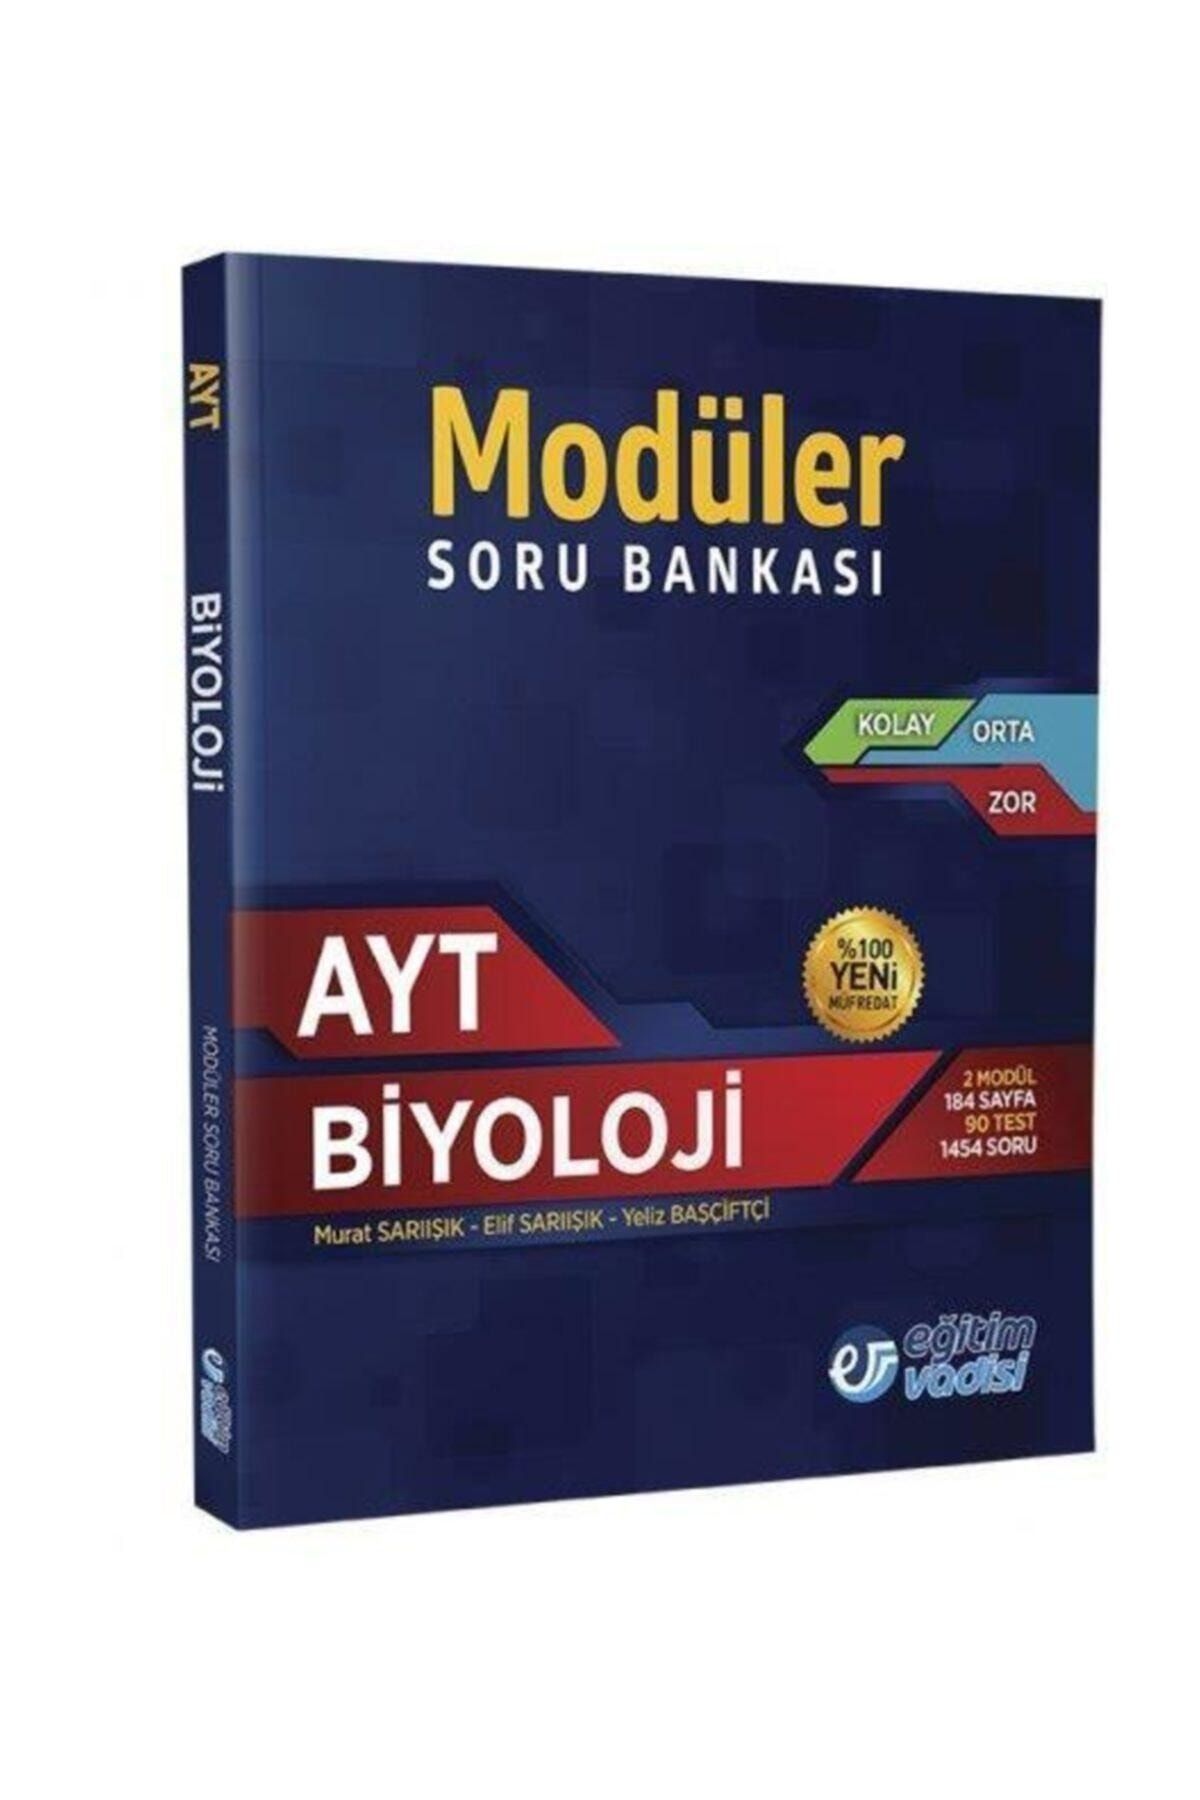 Eğitim Vadisi Yayınları Ayt Biyoloji Modüler Soru Bankası